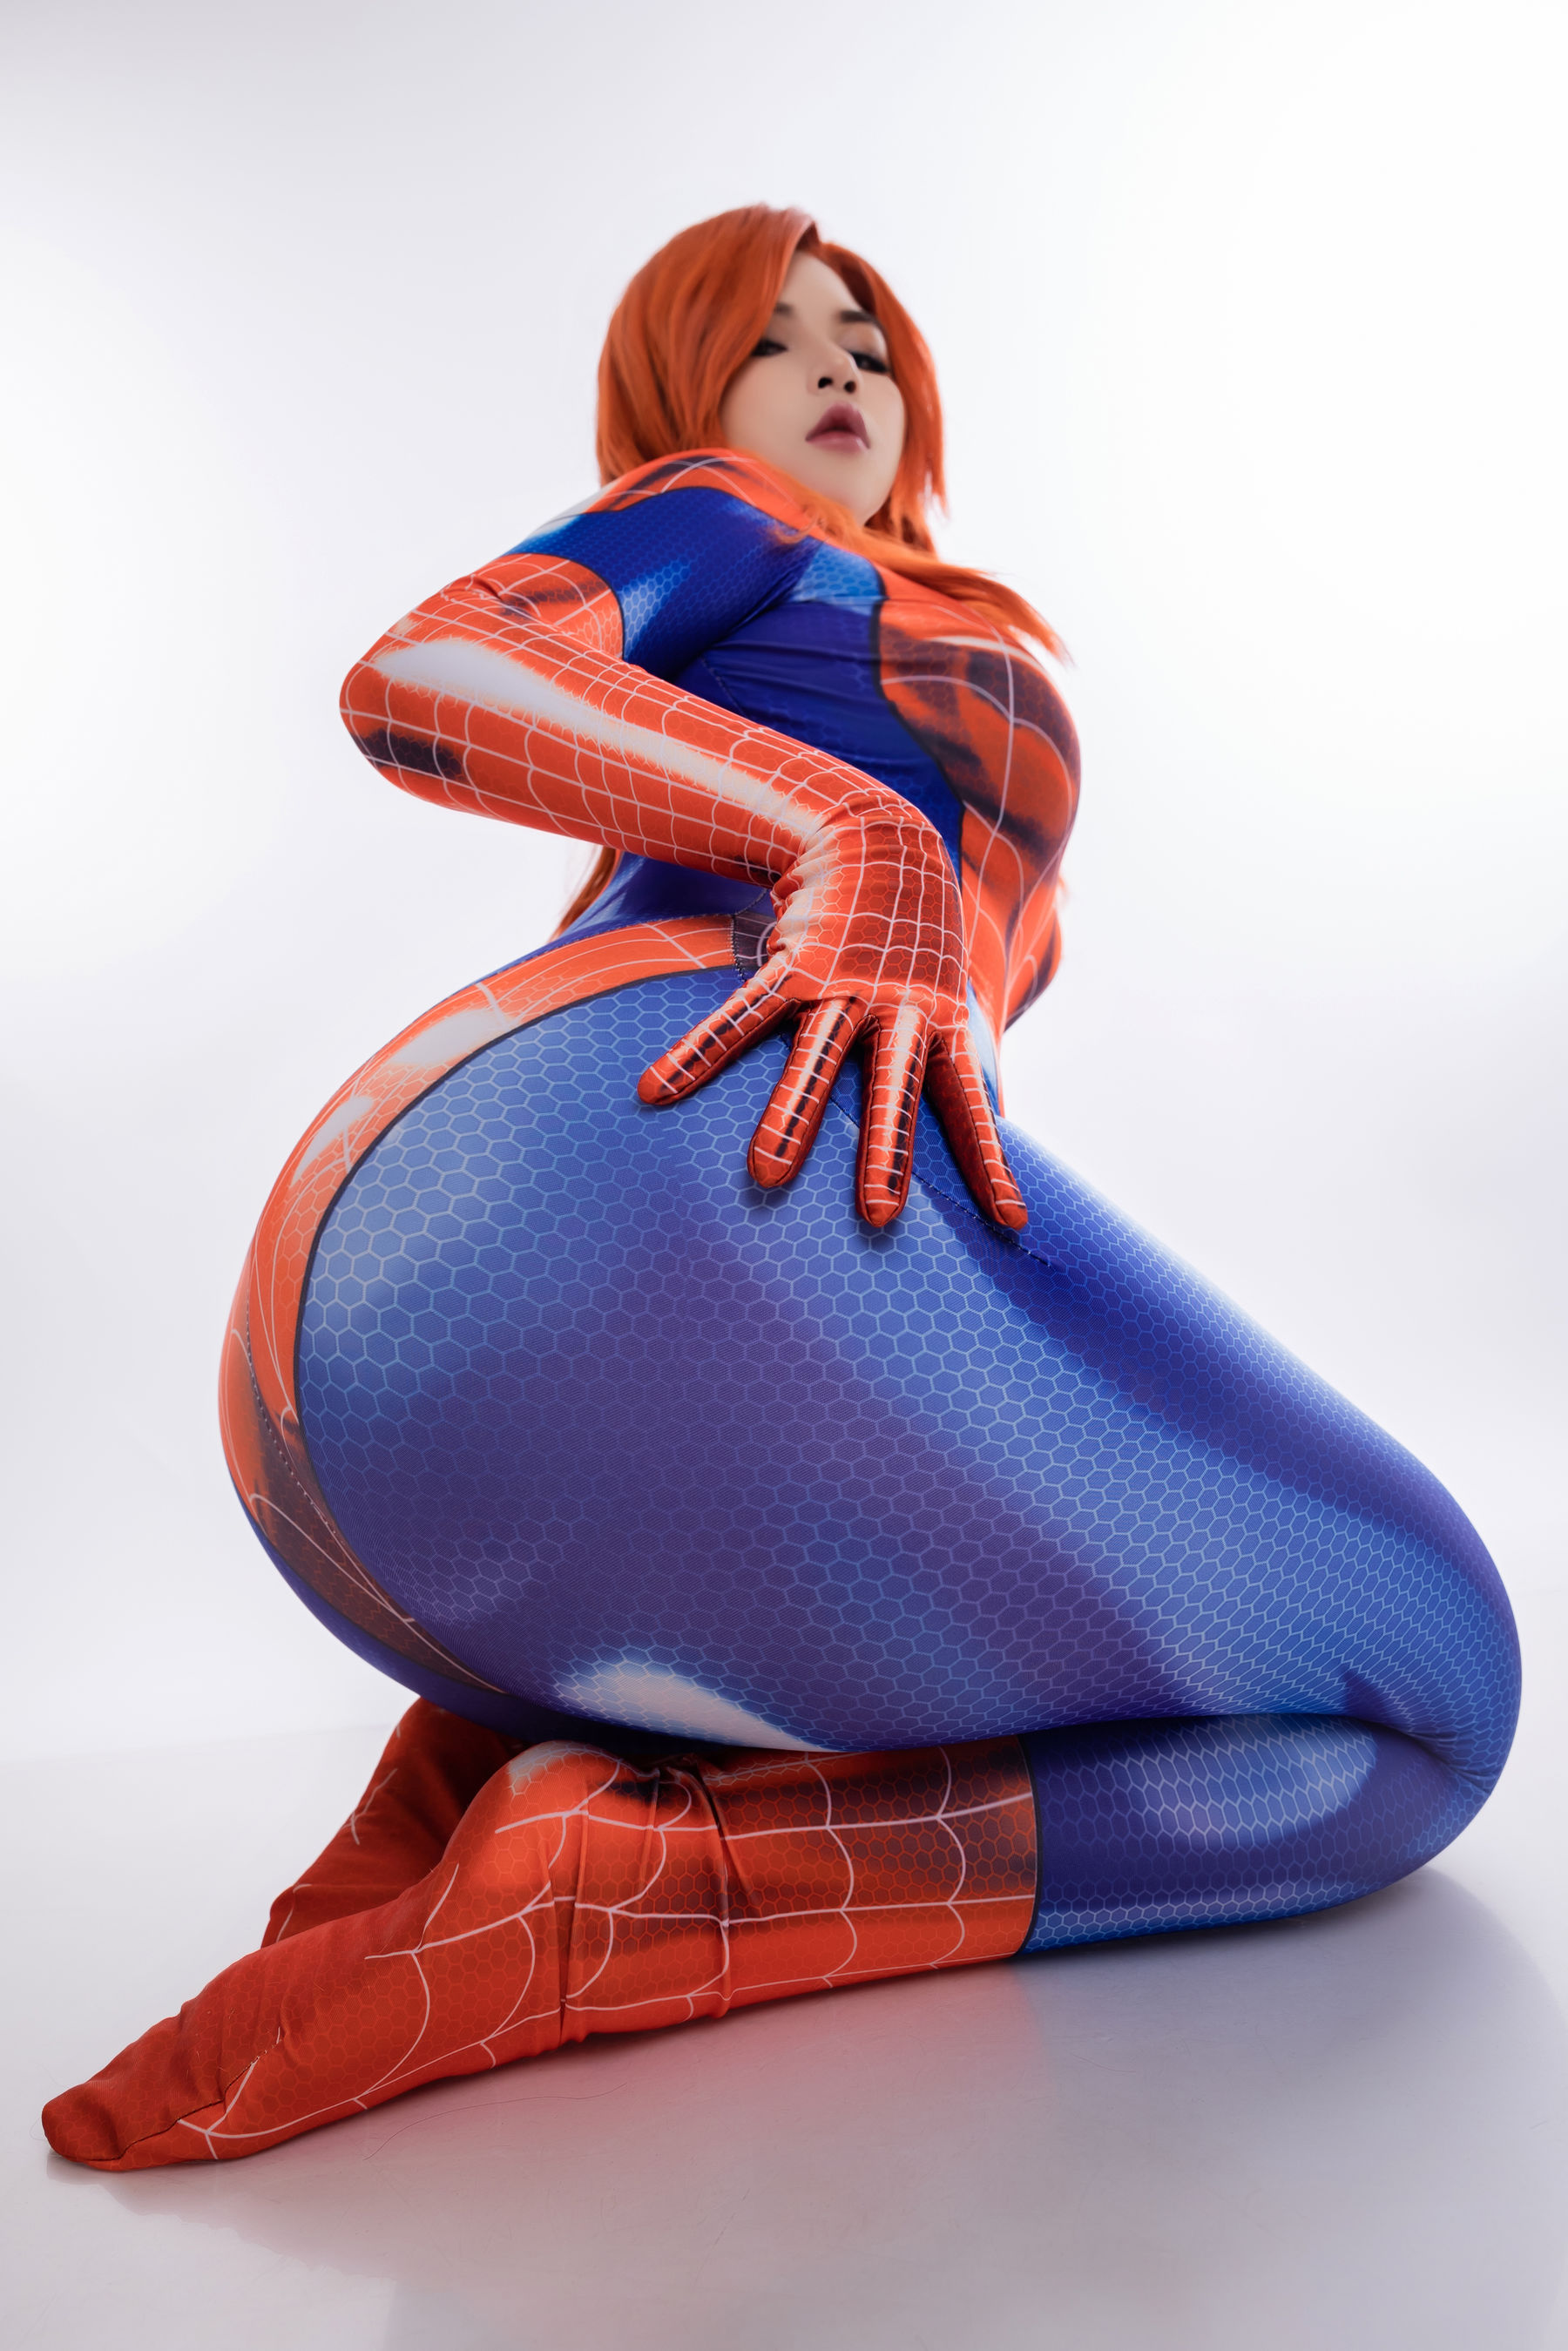 Uy Uy - Mary Jane Spider Man suit/(29P)